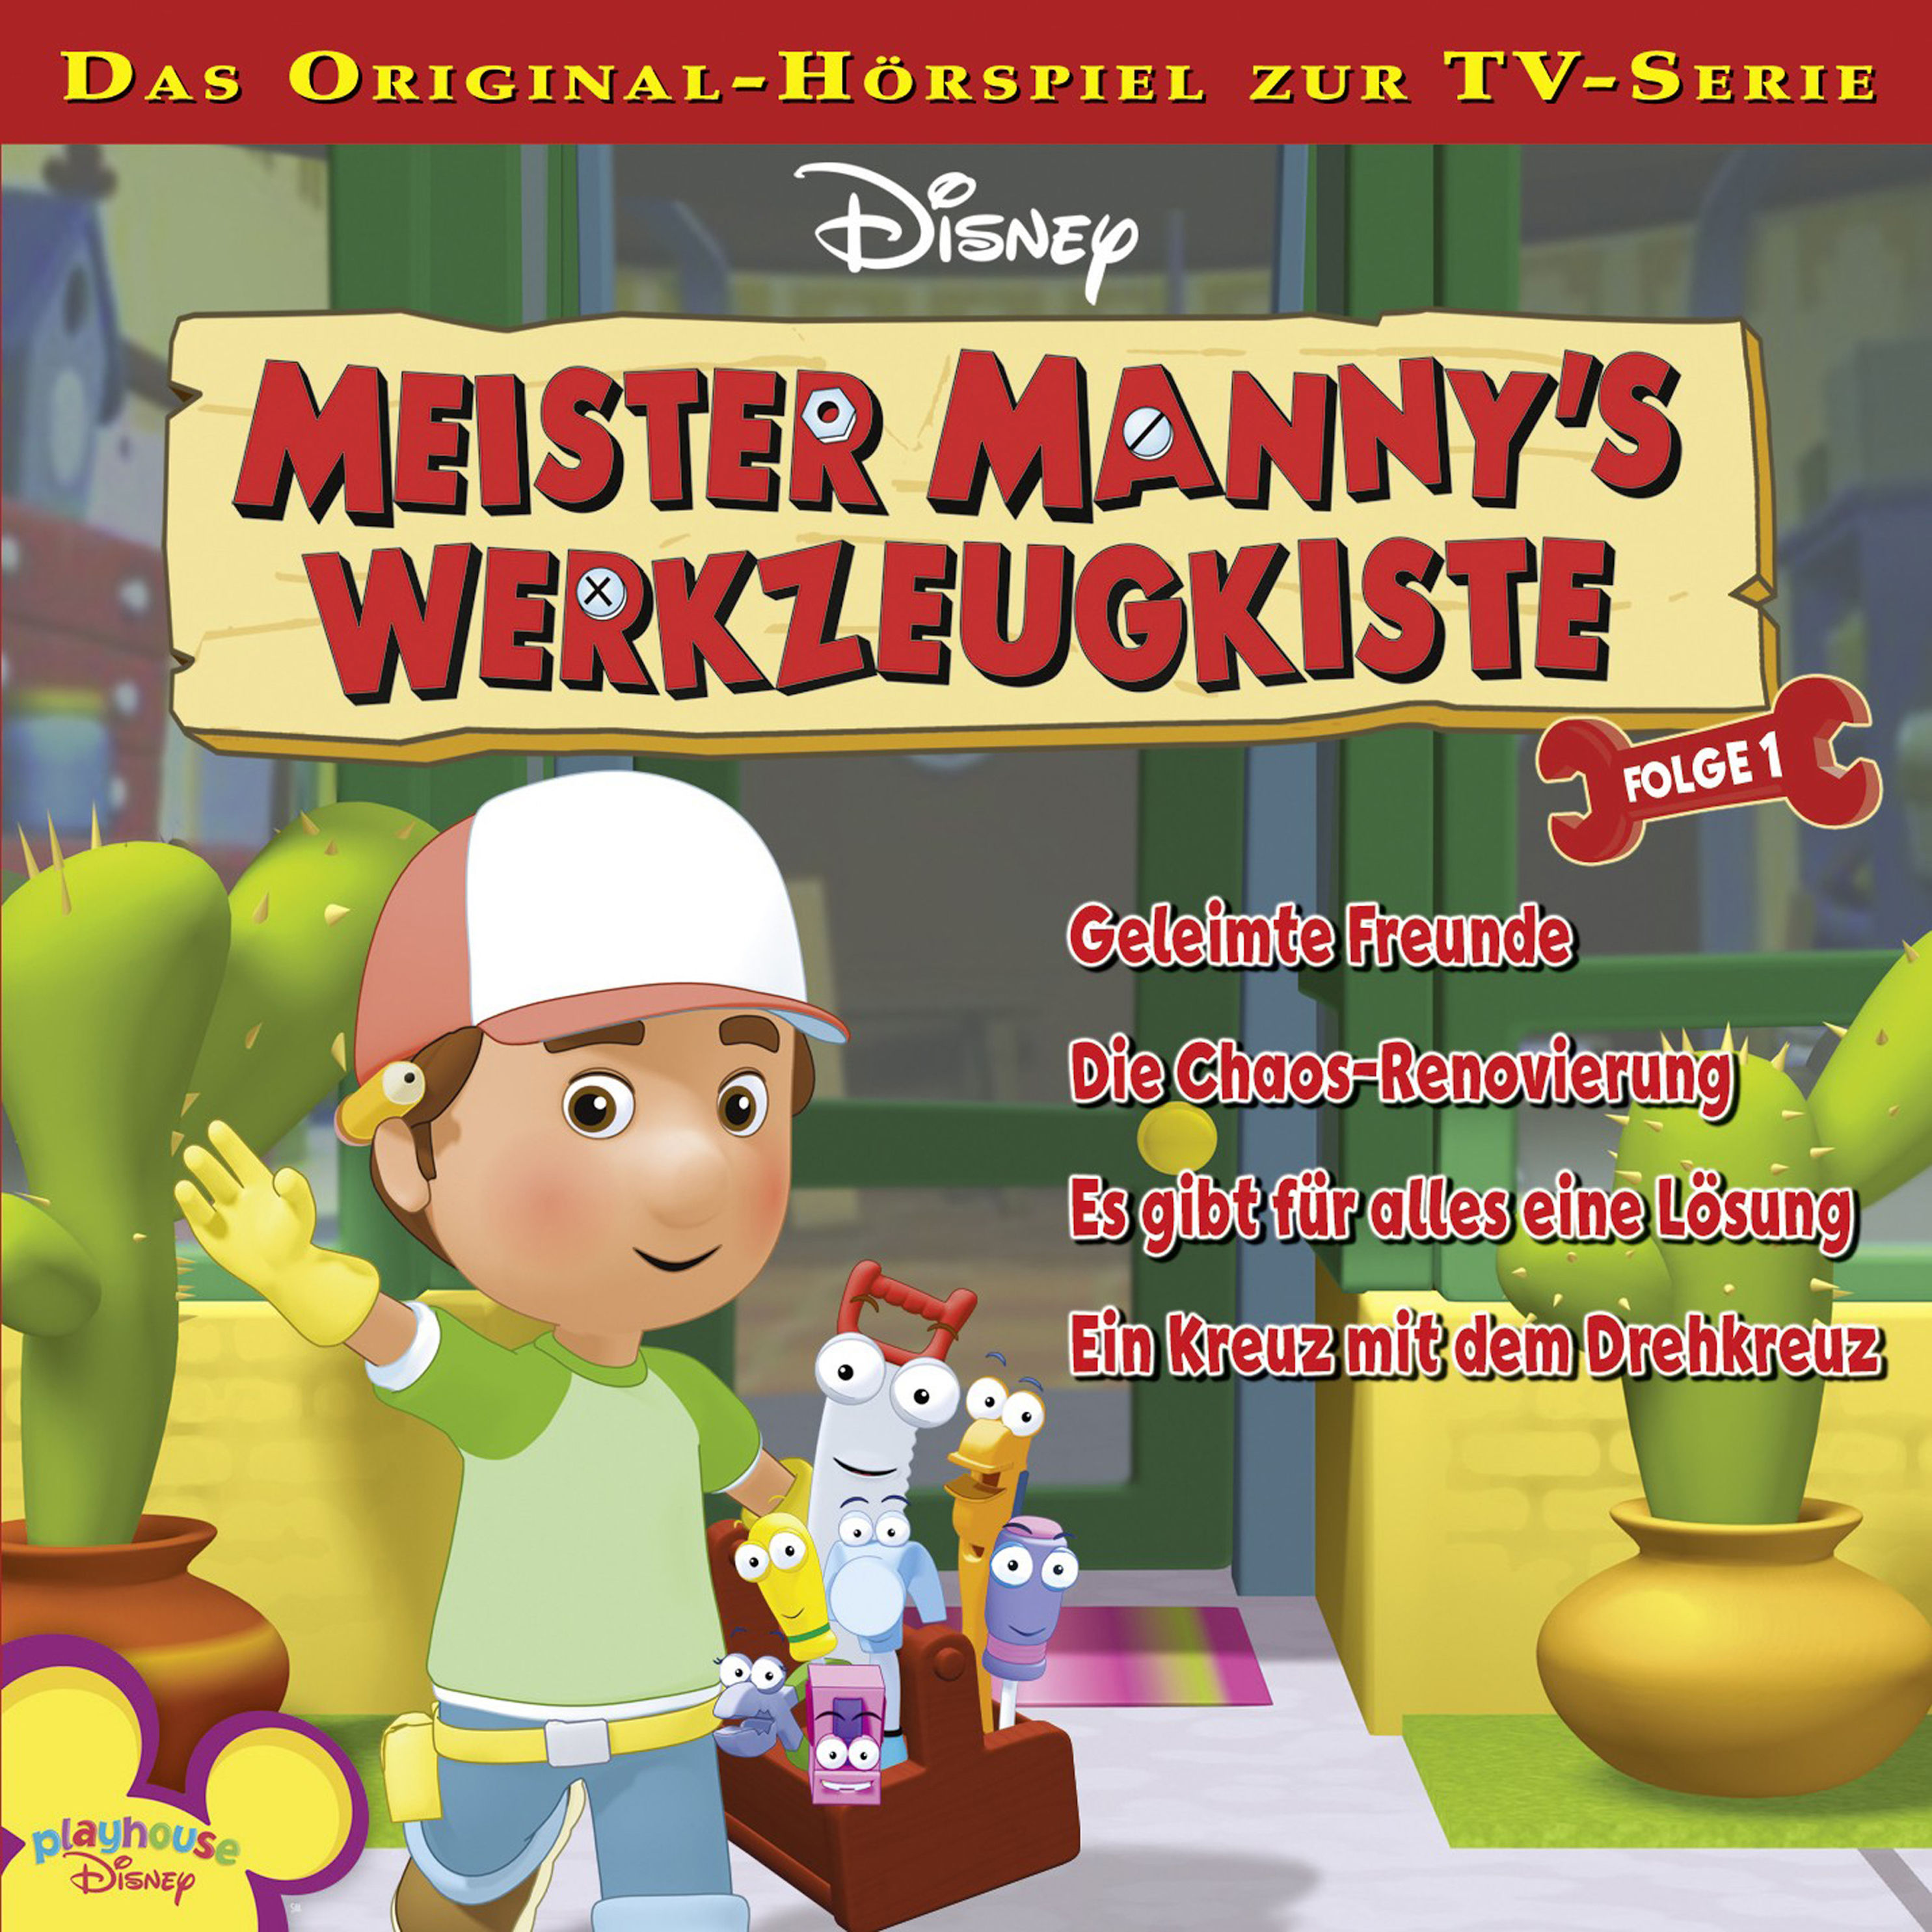 Disney Meister Manny's Werkzeugkiste - 1 - Disney Meister Manny's  Werkzeugkiste - Folge 1 Hörbuch Download